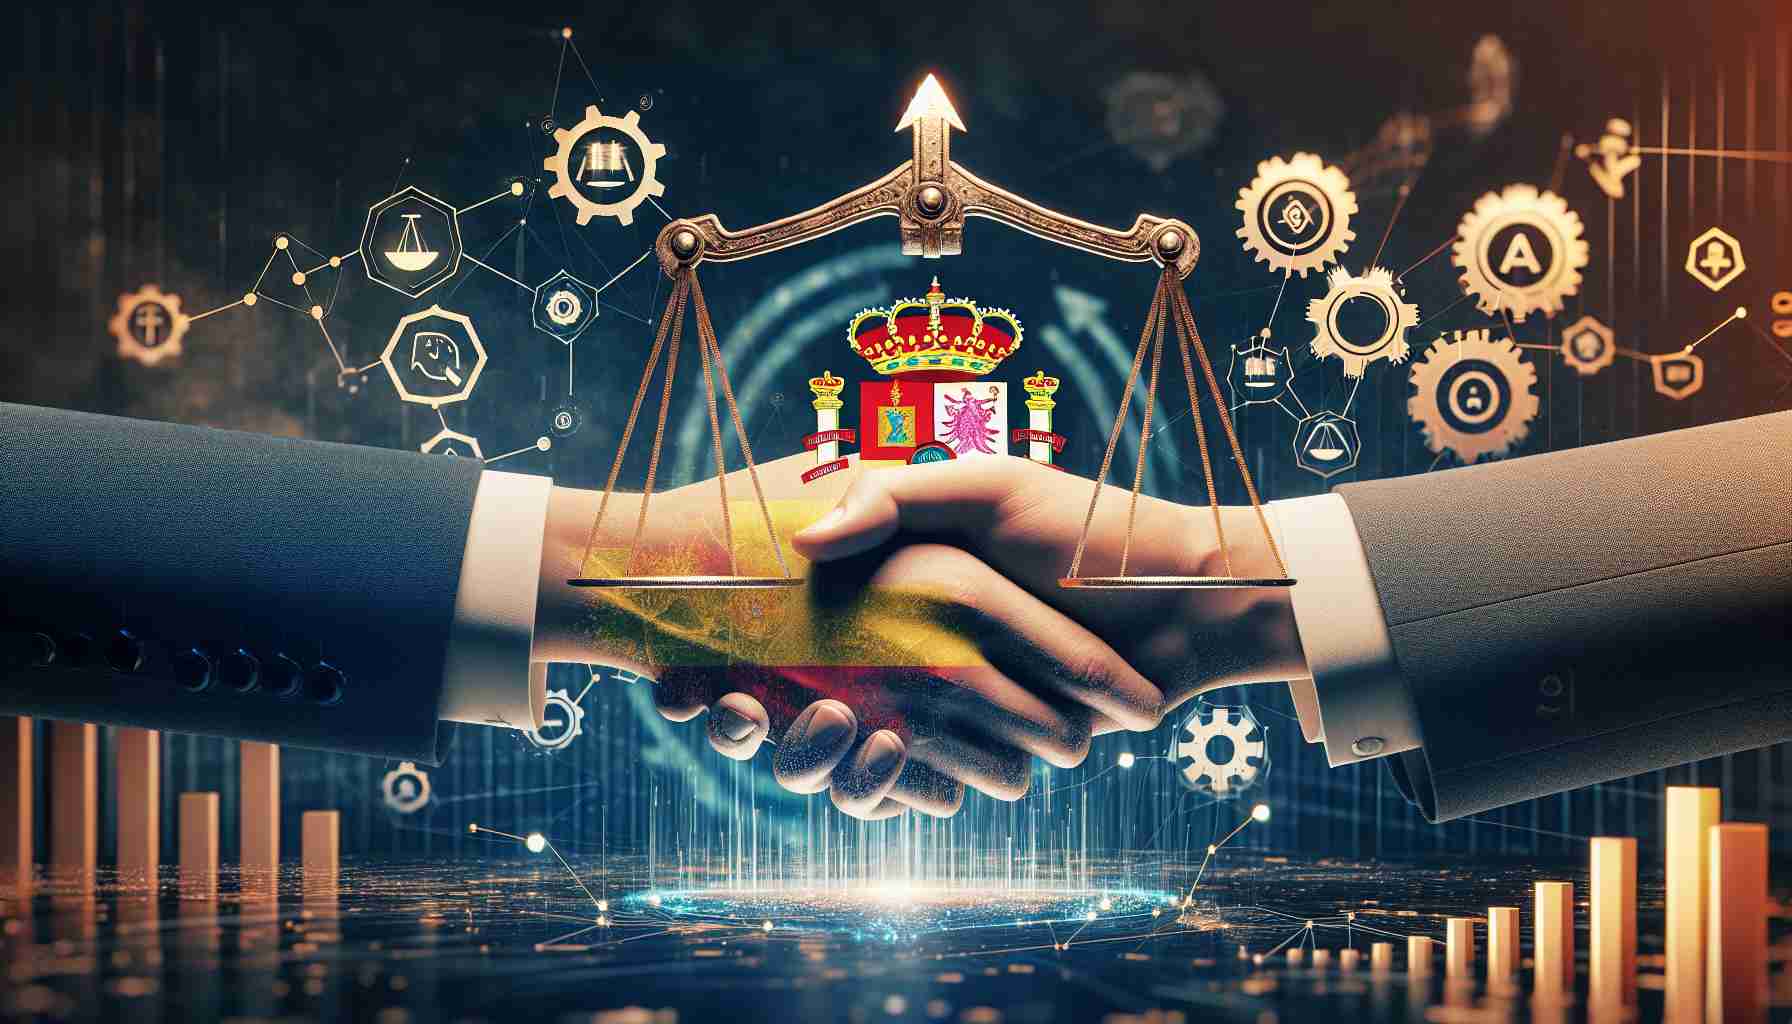 España e IBM colaboran para impulsar iniciativas éticas de IA y crecimiento económico